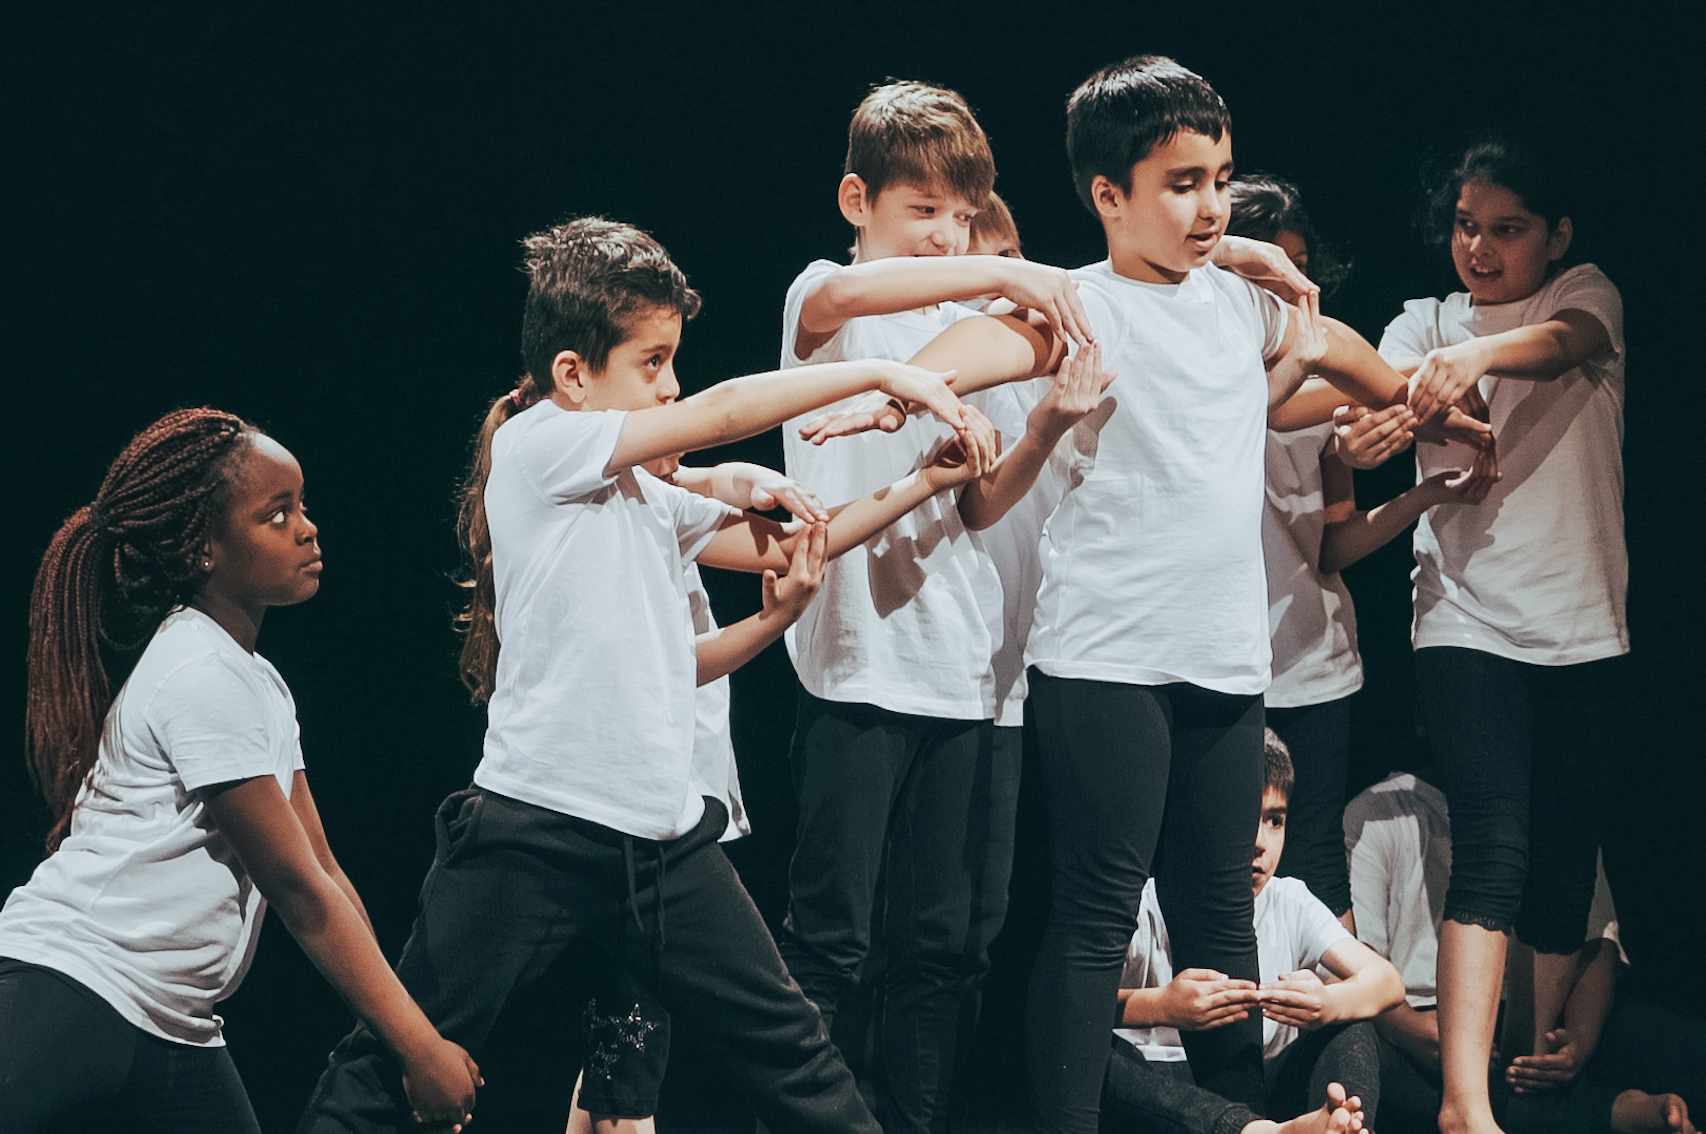 Grundschüler:innen tanzen zusammen auf einer Bühne